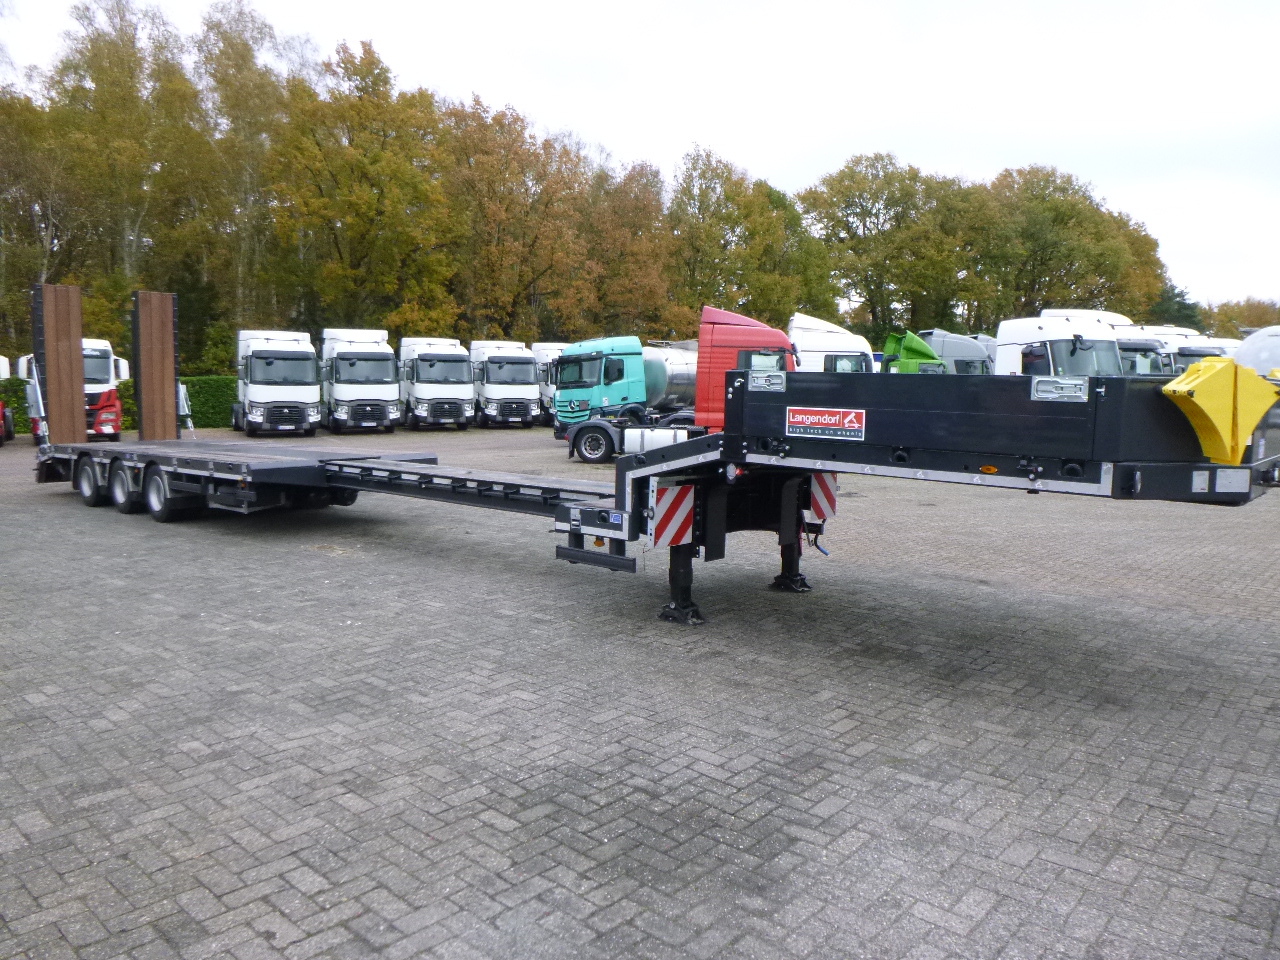 جديد عربة مسطحة منخفضة نصف مقطورة Langendorf 3-axle semi-lowbed trailer 48T ext. 13.5 m + ramps: صور 14